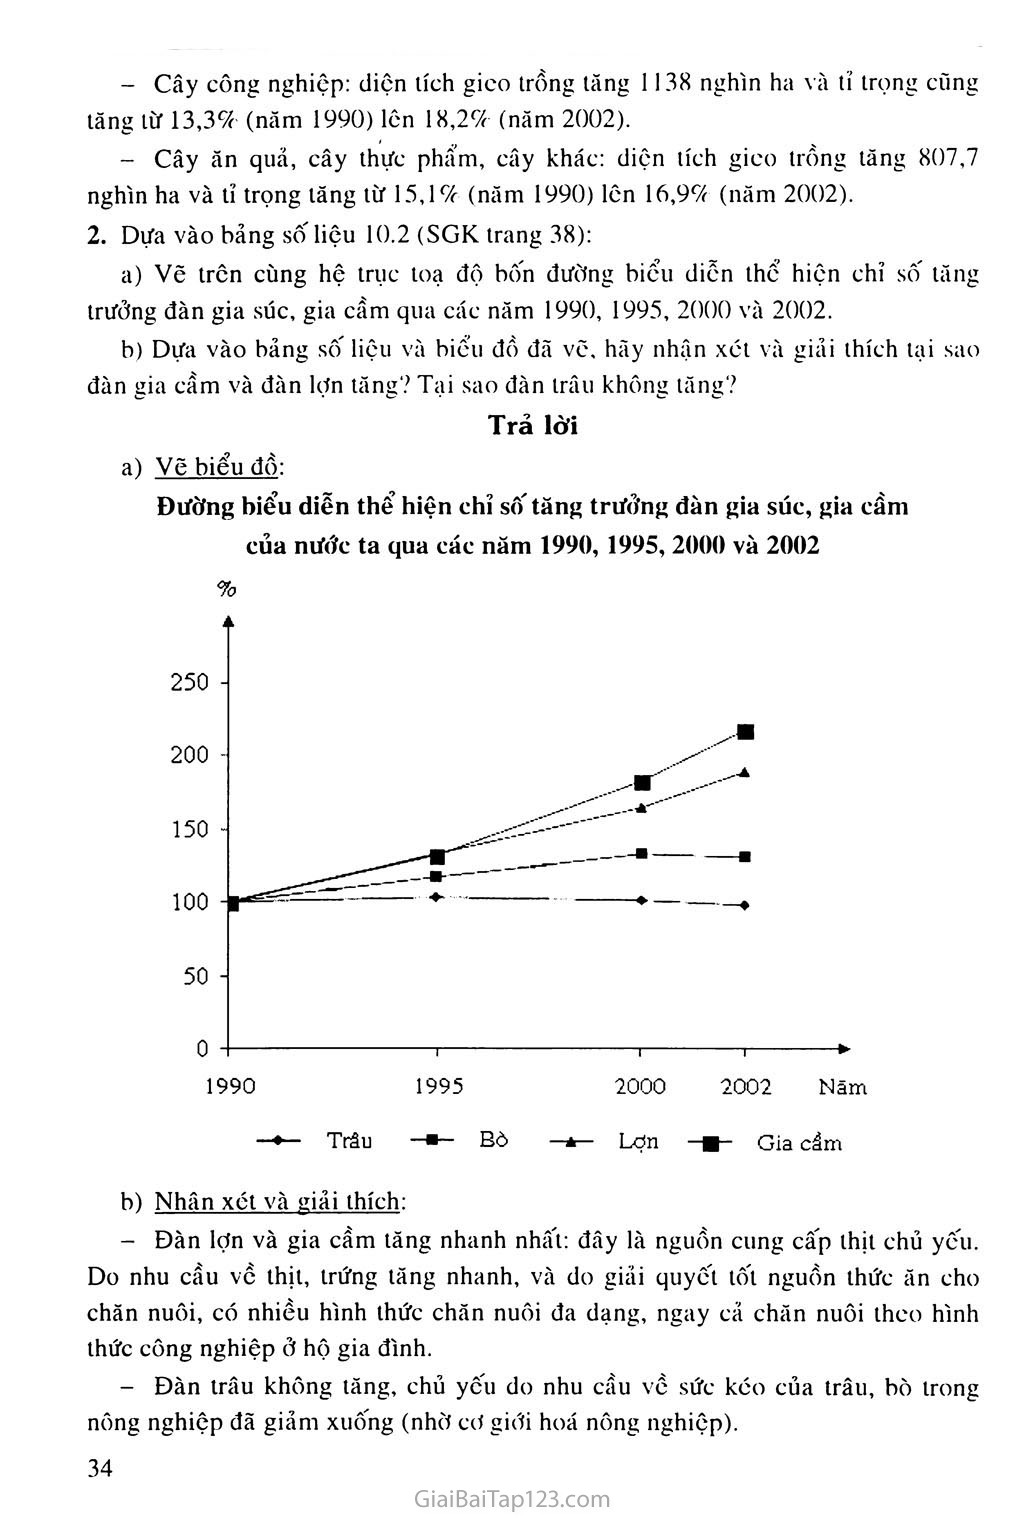 Bài 10. Thực hành: Vẽ và phân tích biểu đồ về sự thay đổi cơ cấu diện tích gieo trồng phân theo các loại cây, sự tăng trưởng đàn gia súc, gia cầm trang 2